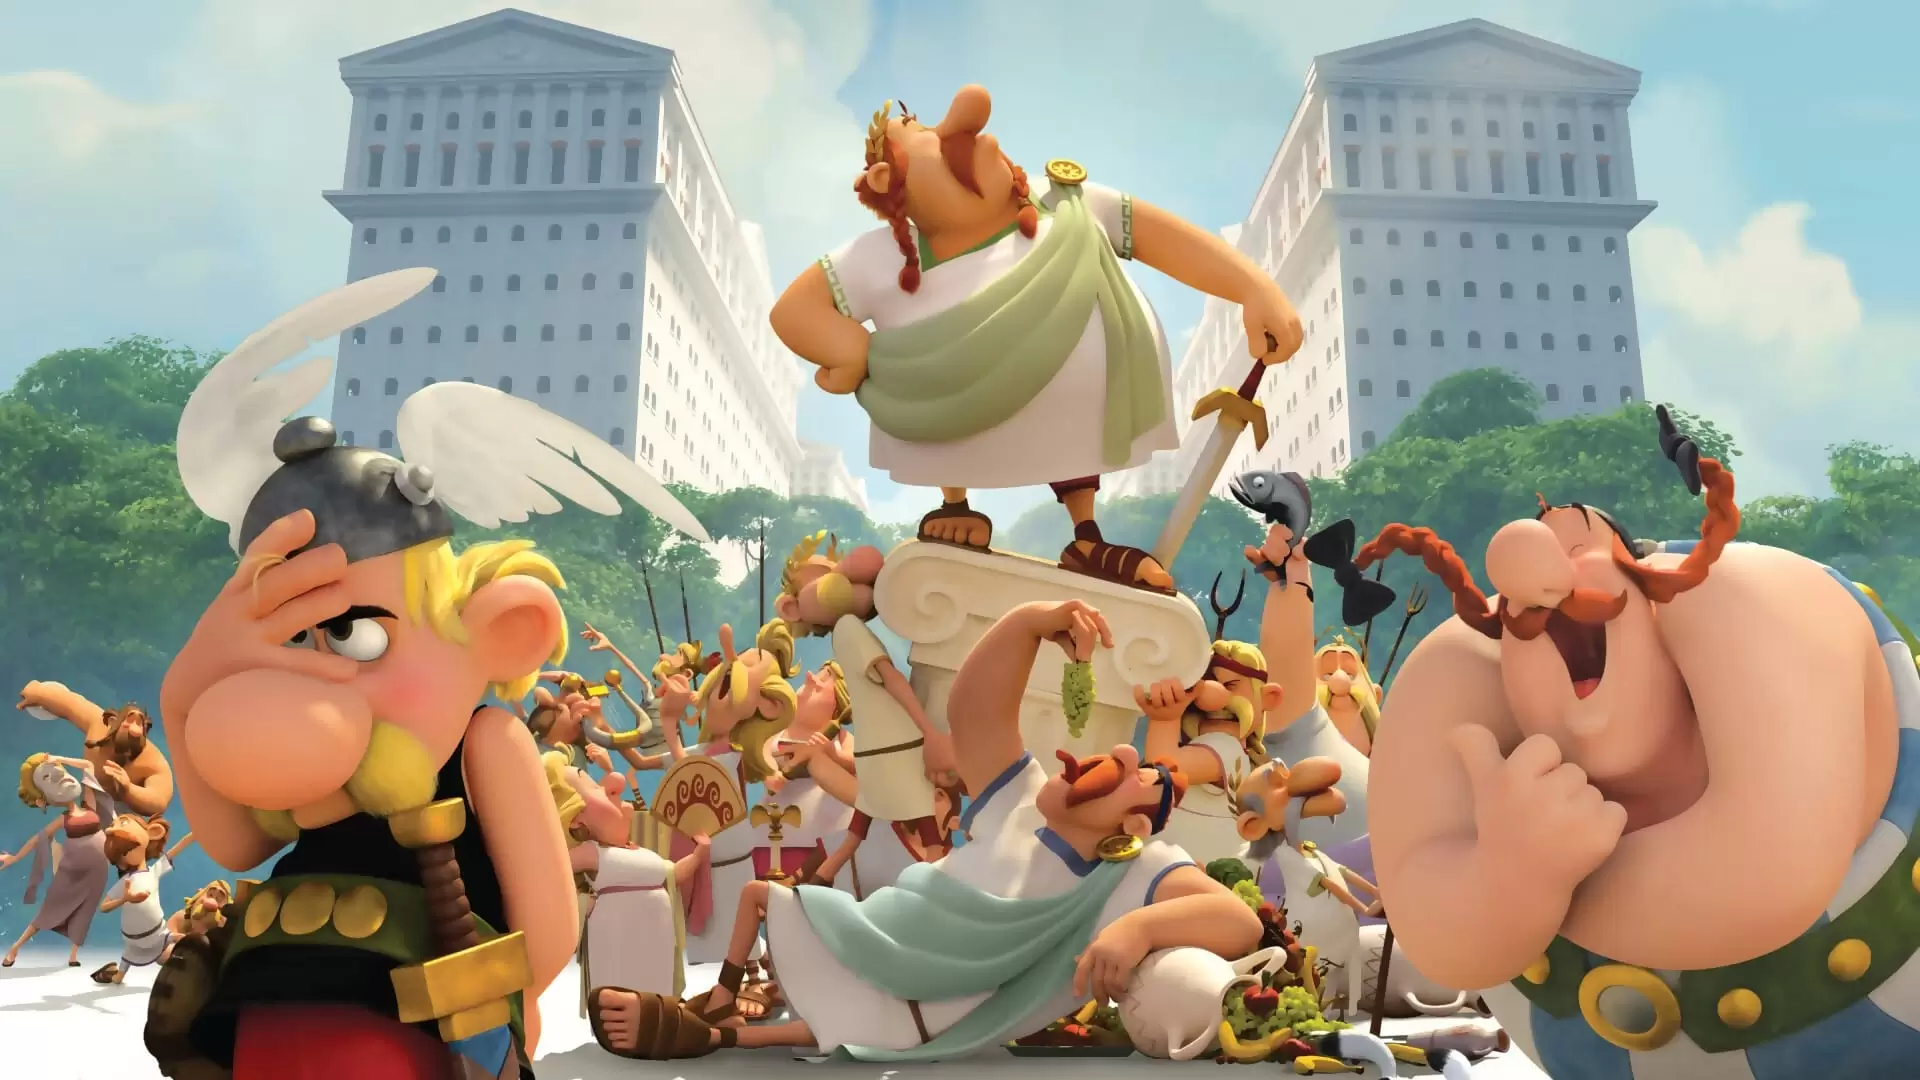 دانلود انیمیشن Asterix and Obelix: Mansion of the Gods 2014 با زیرنویس فارسی